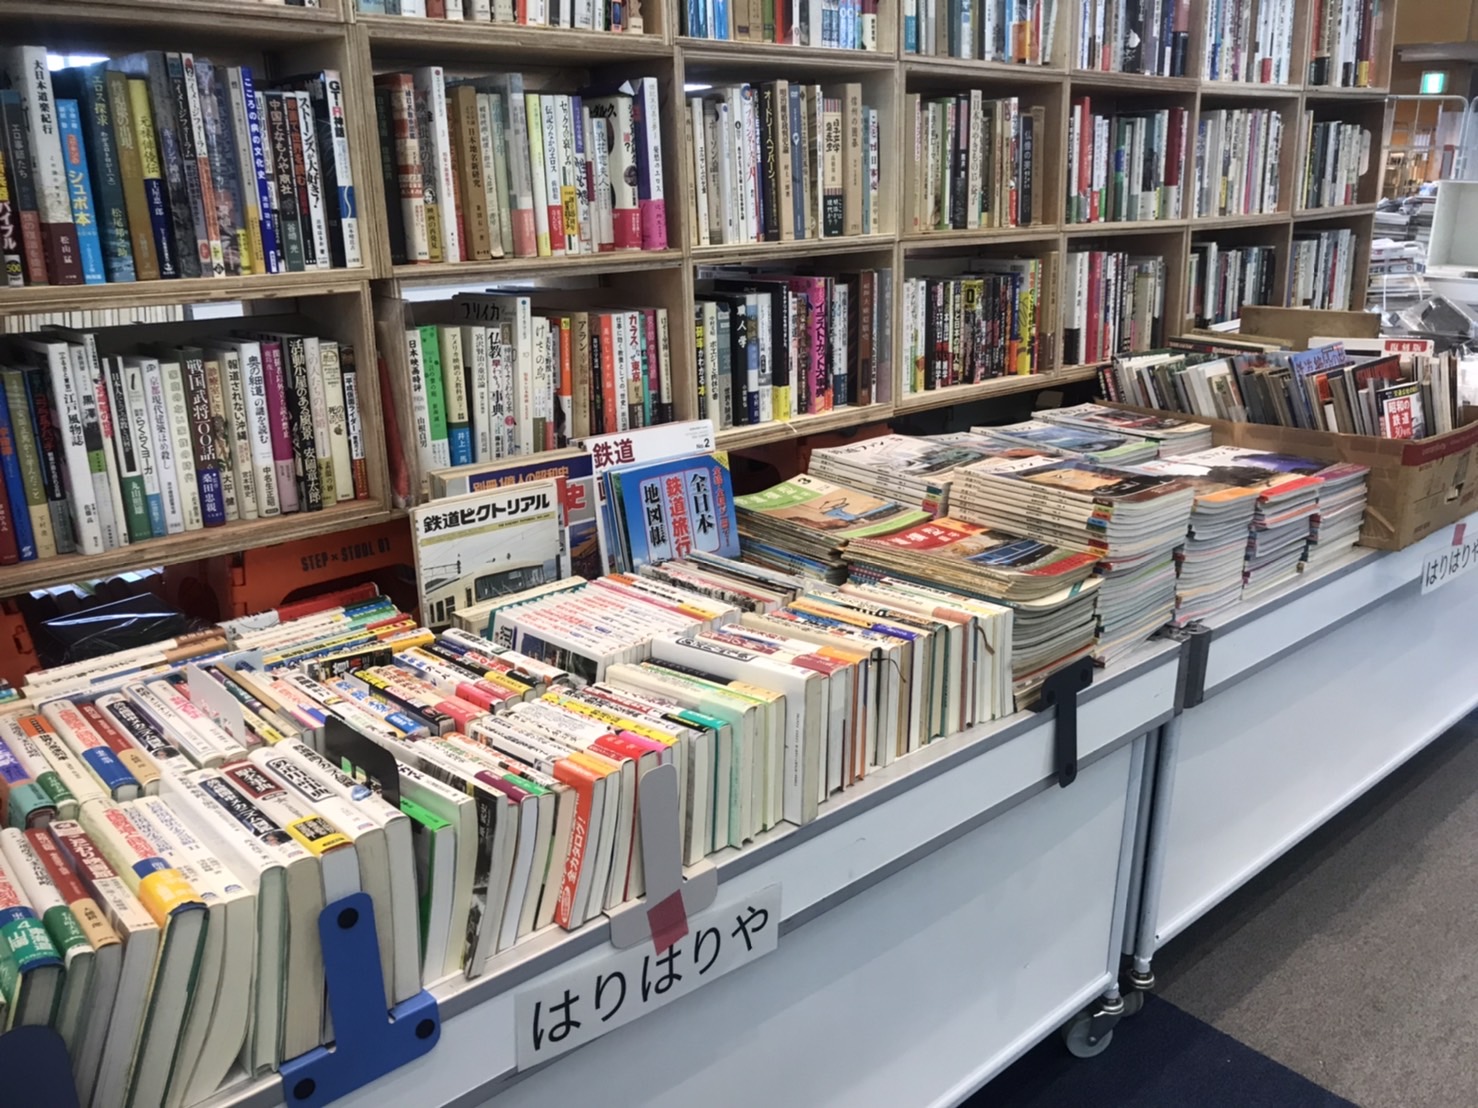 12月7日より1週間、埼玉県の所沢古本まつりに出店して古書販売します